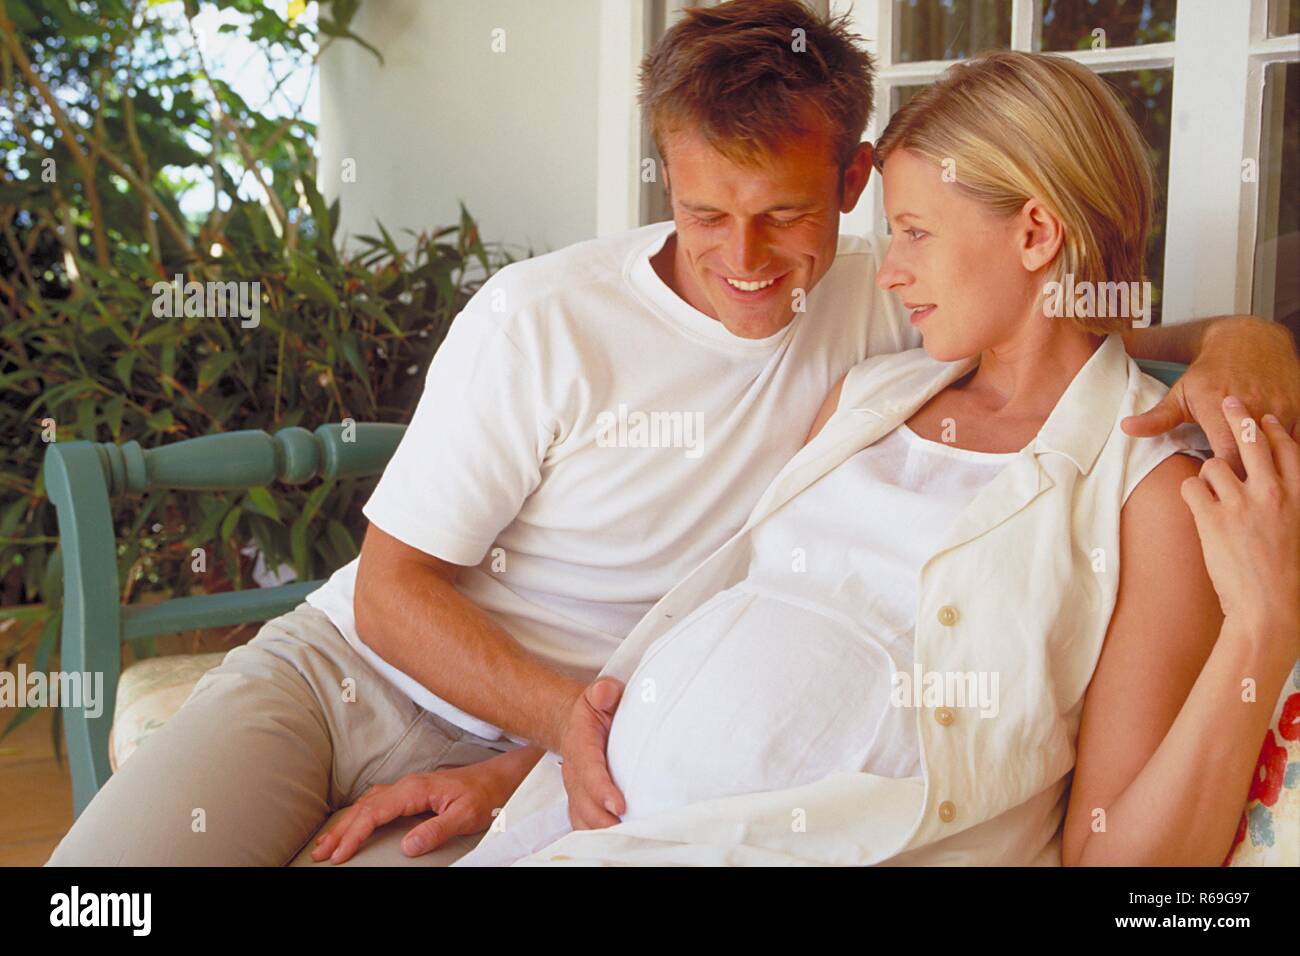 Outdoor, hell gekleideter Mann sitzt mit seiner schwangeren weiss gekleideten Frau auf einer Bank auf der Terrasse und streichelt ihren Bauch Stock Photo